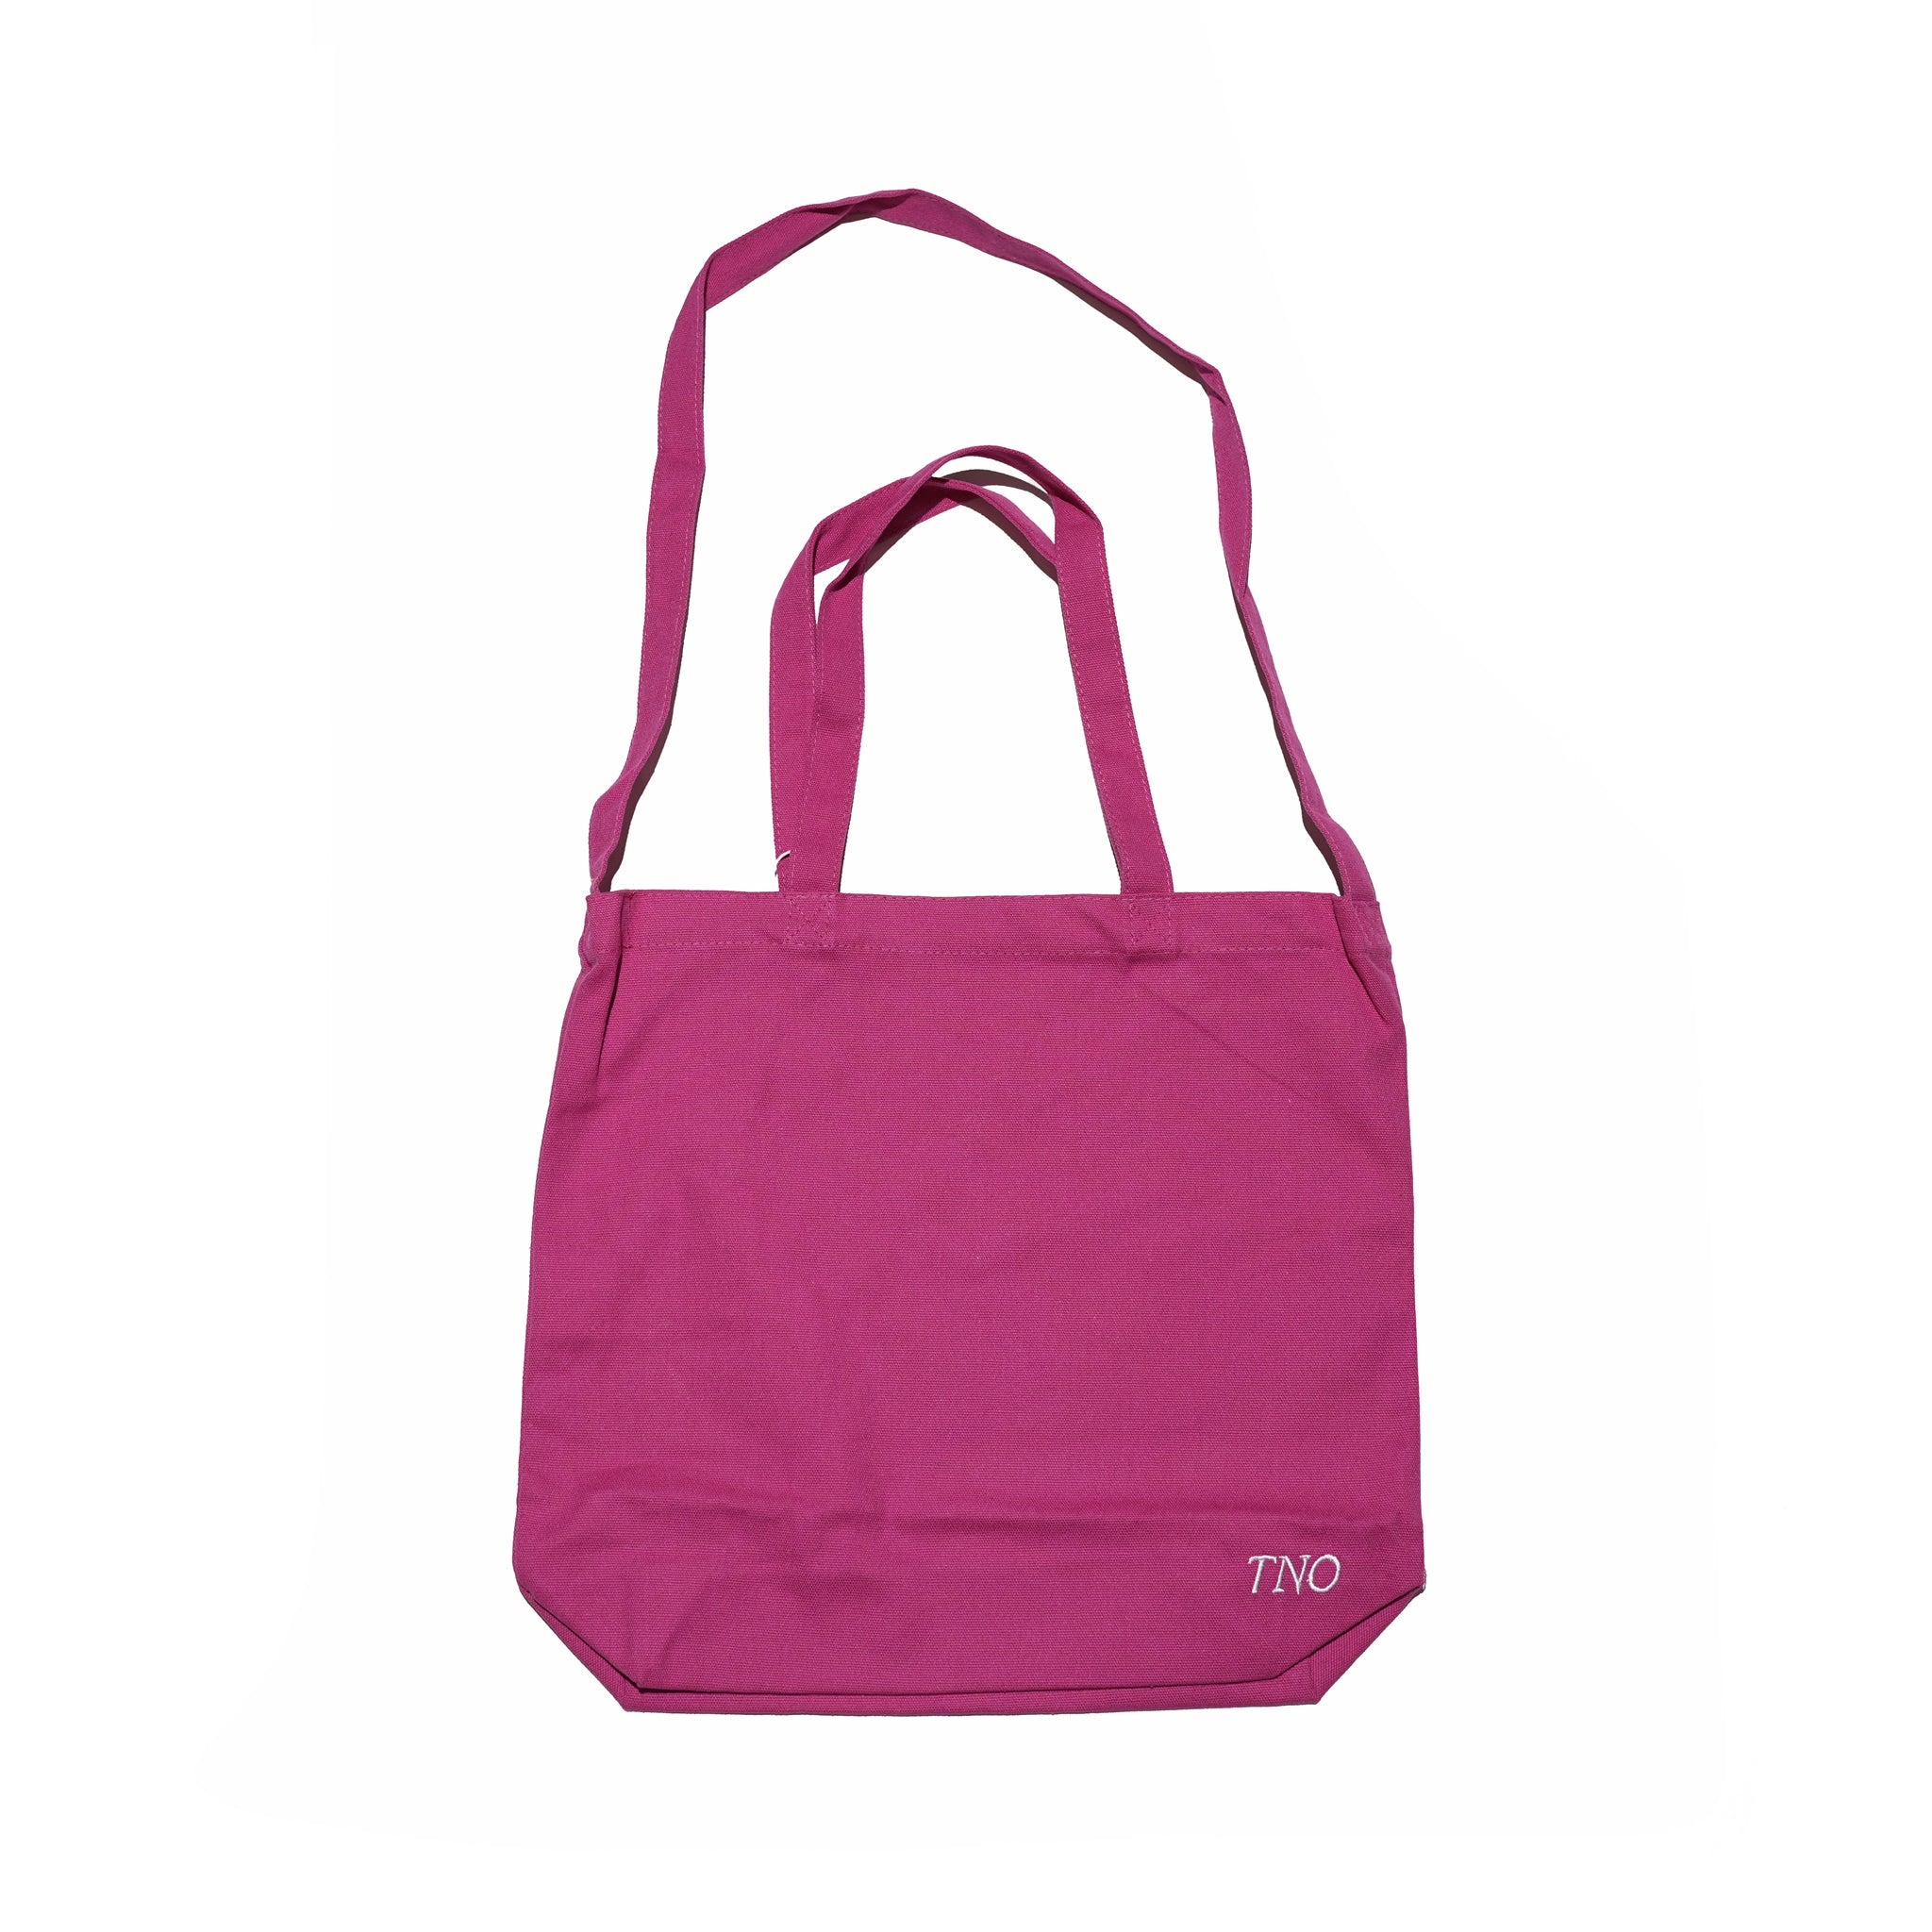 No:tno-13 | Name:CATNA Tote Bag | Color:Carmine【THE NEW ORIGINALS_ザ ニュー オリジナルズ】